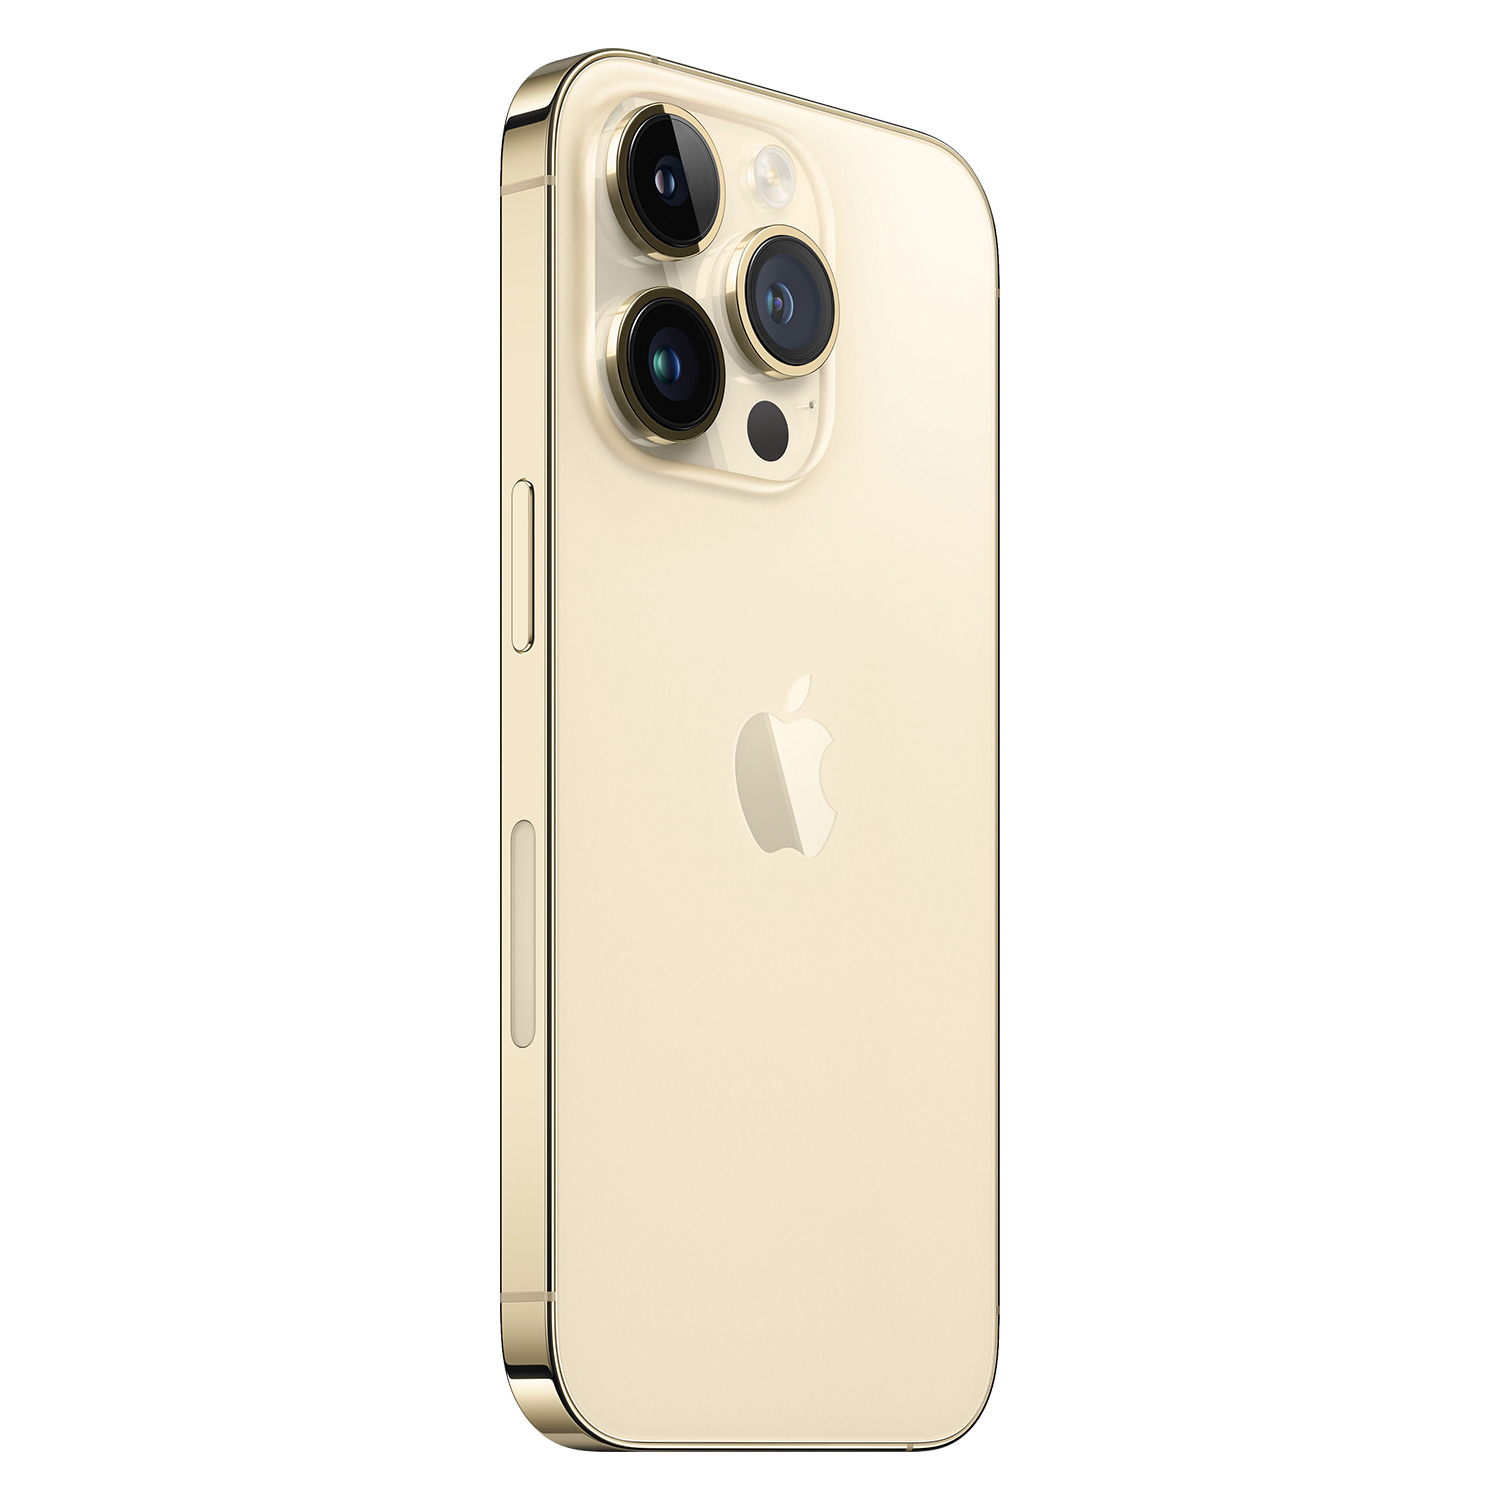 Apple iPhone 14 Pro *Swap A+* 256GB eSIM Tela 6.1 - Dourado (Somente Aparelho)